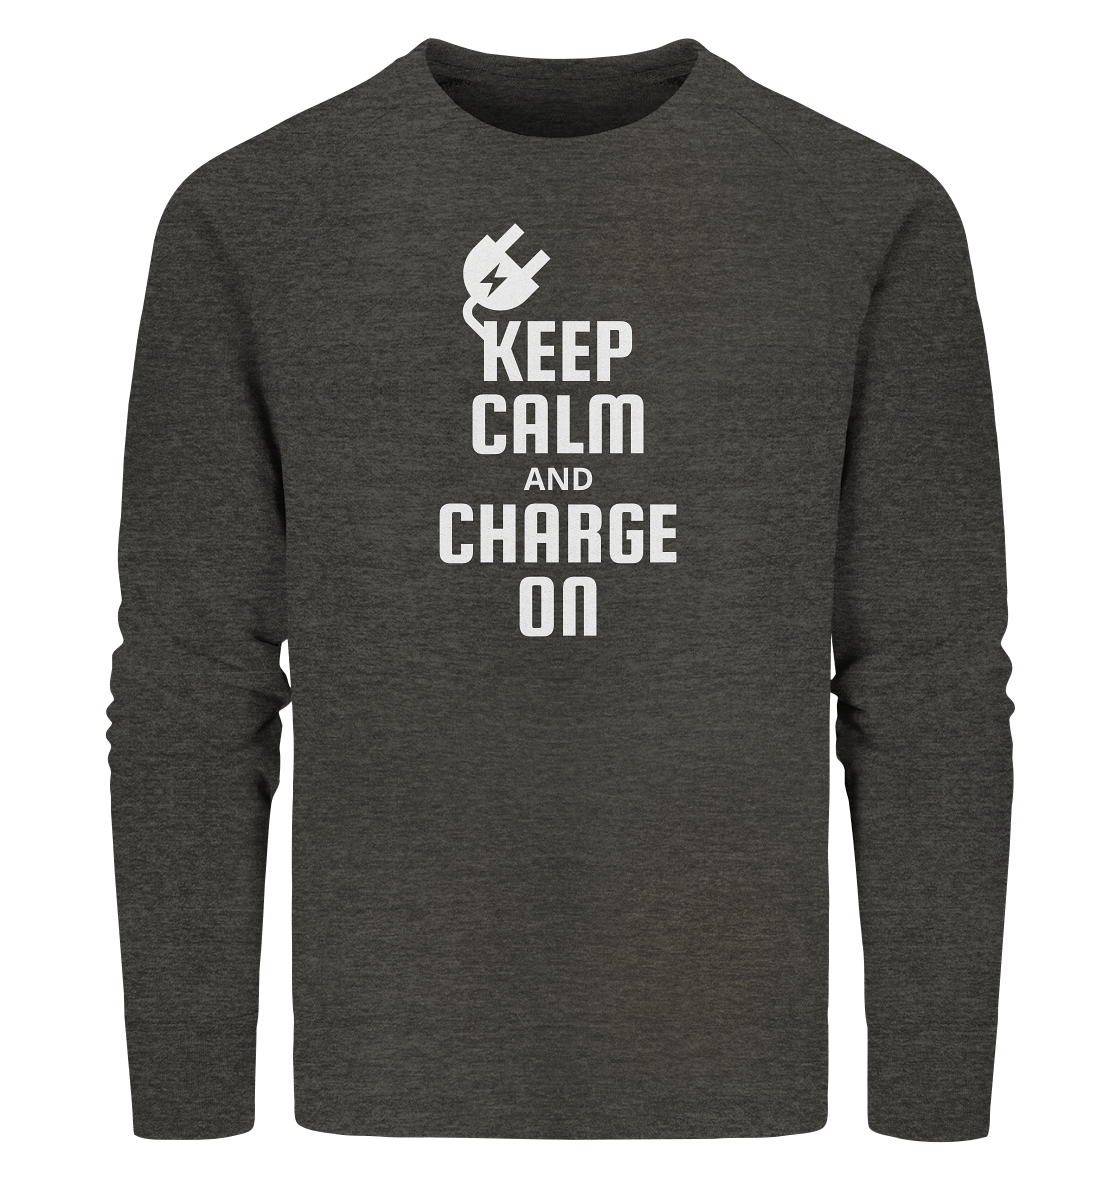 Charge on ORGANIC - Organic Sweatshirt